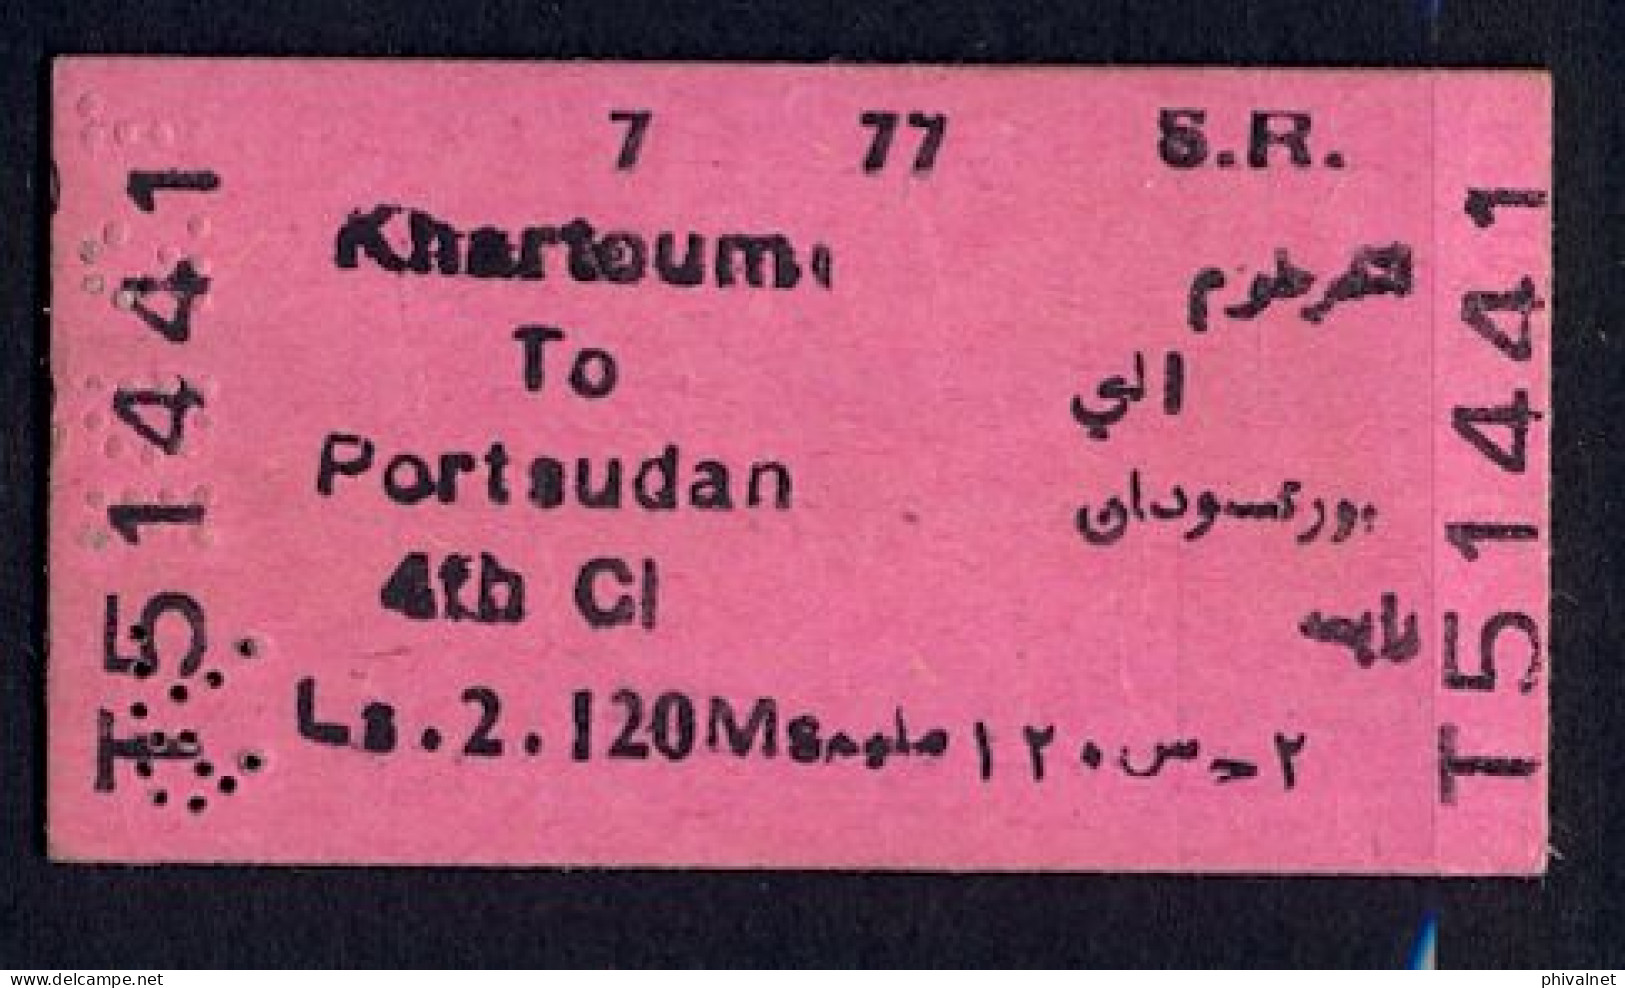 SOUDAN / SUDAN , KHARTOUM - PORT SUDAN , TICKET DE FERROCARRIL , TREN , TRAIN , RAILWAYS - Welt